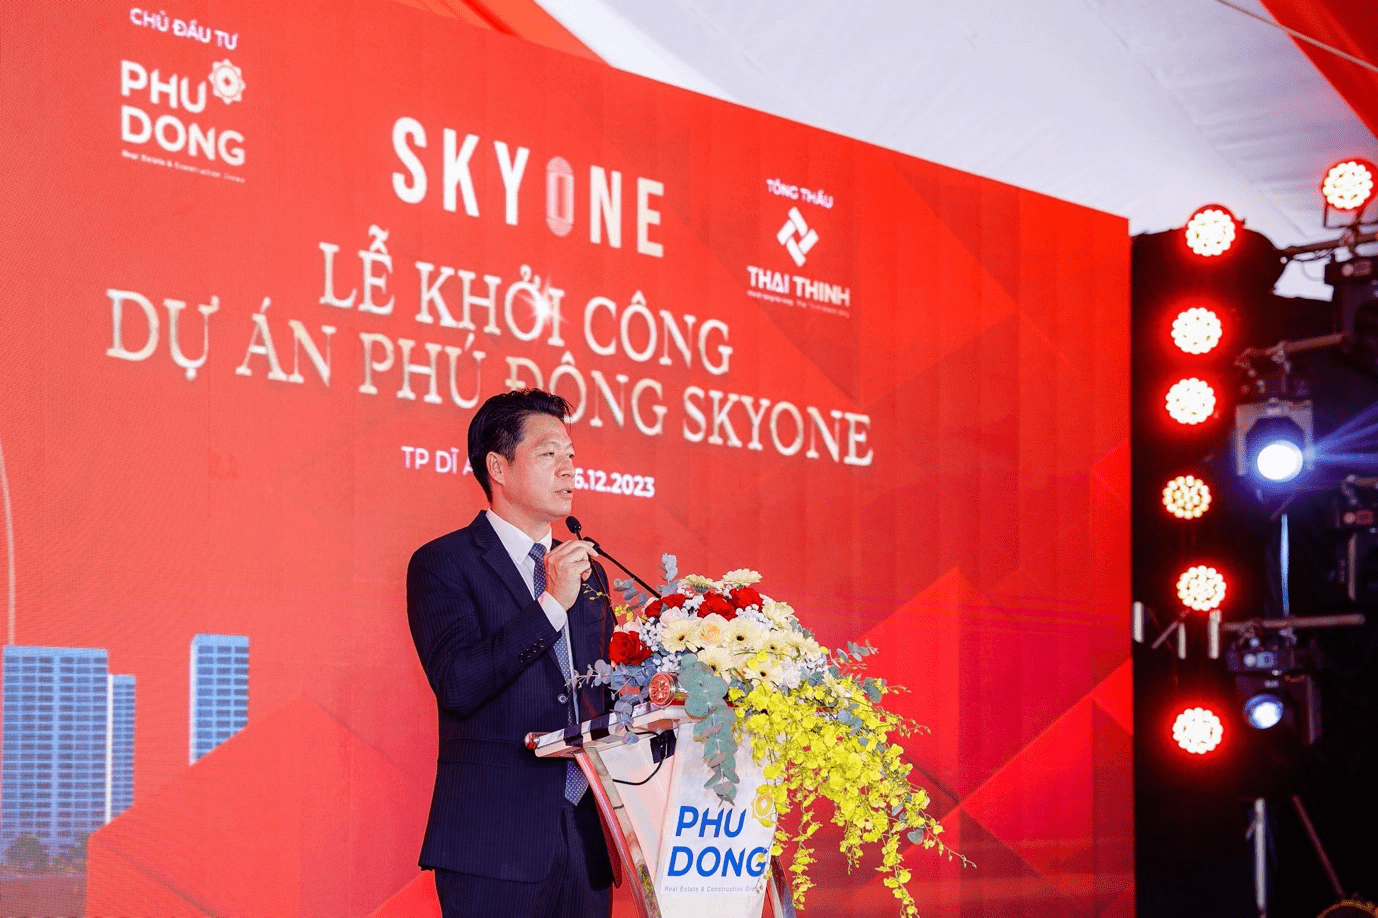 Lễ khởi công dự án Phú Đông Skyone